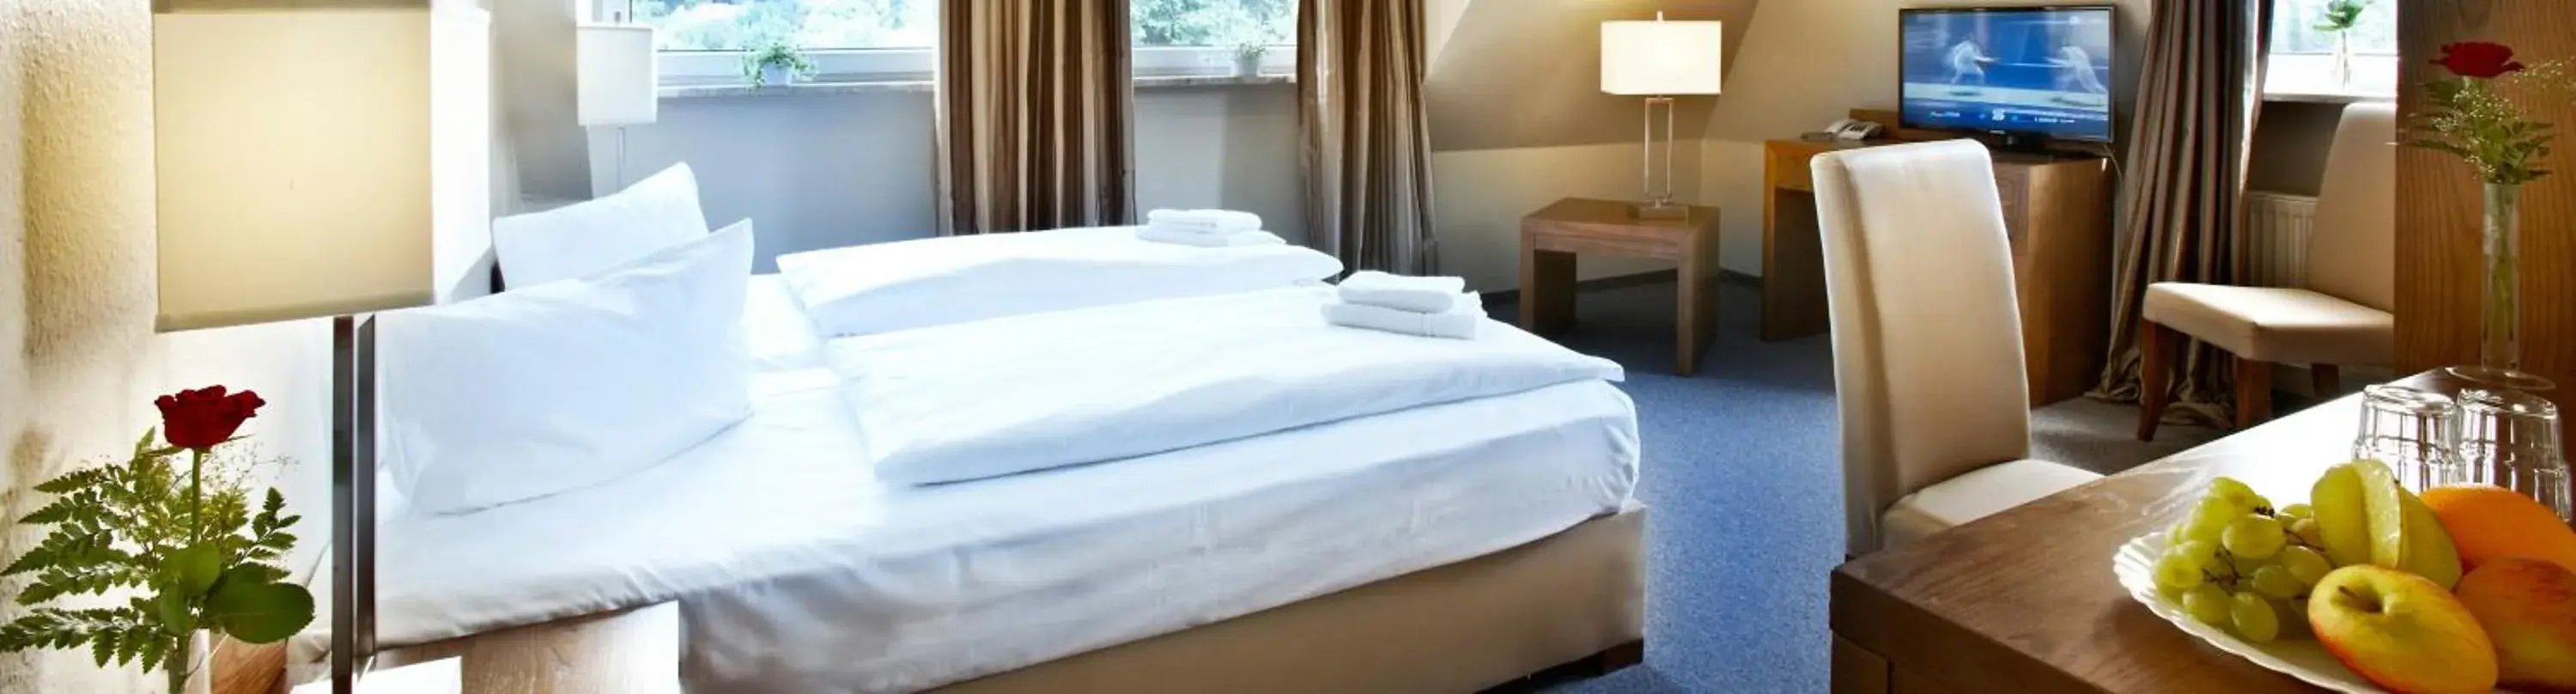 Bed in Hotel Koenigstein Kiel by Tulip Inn